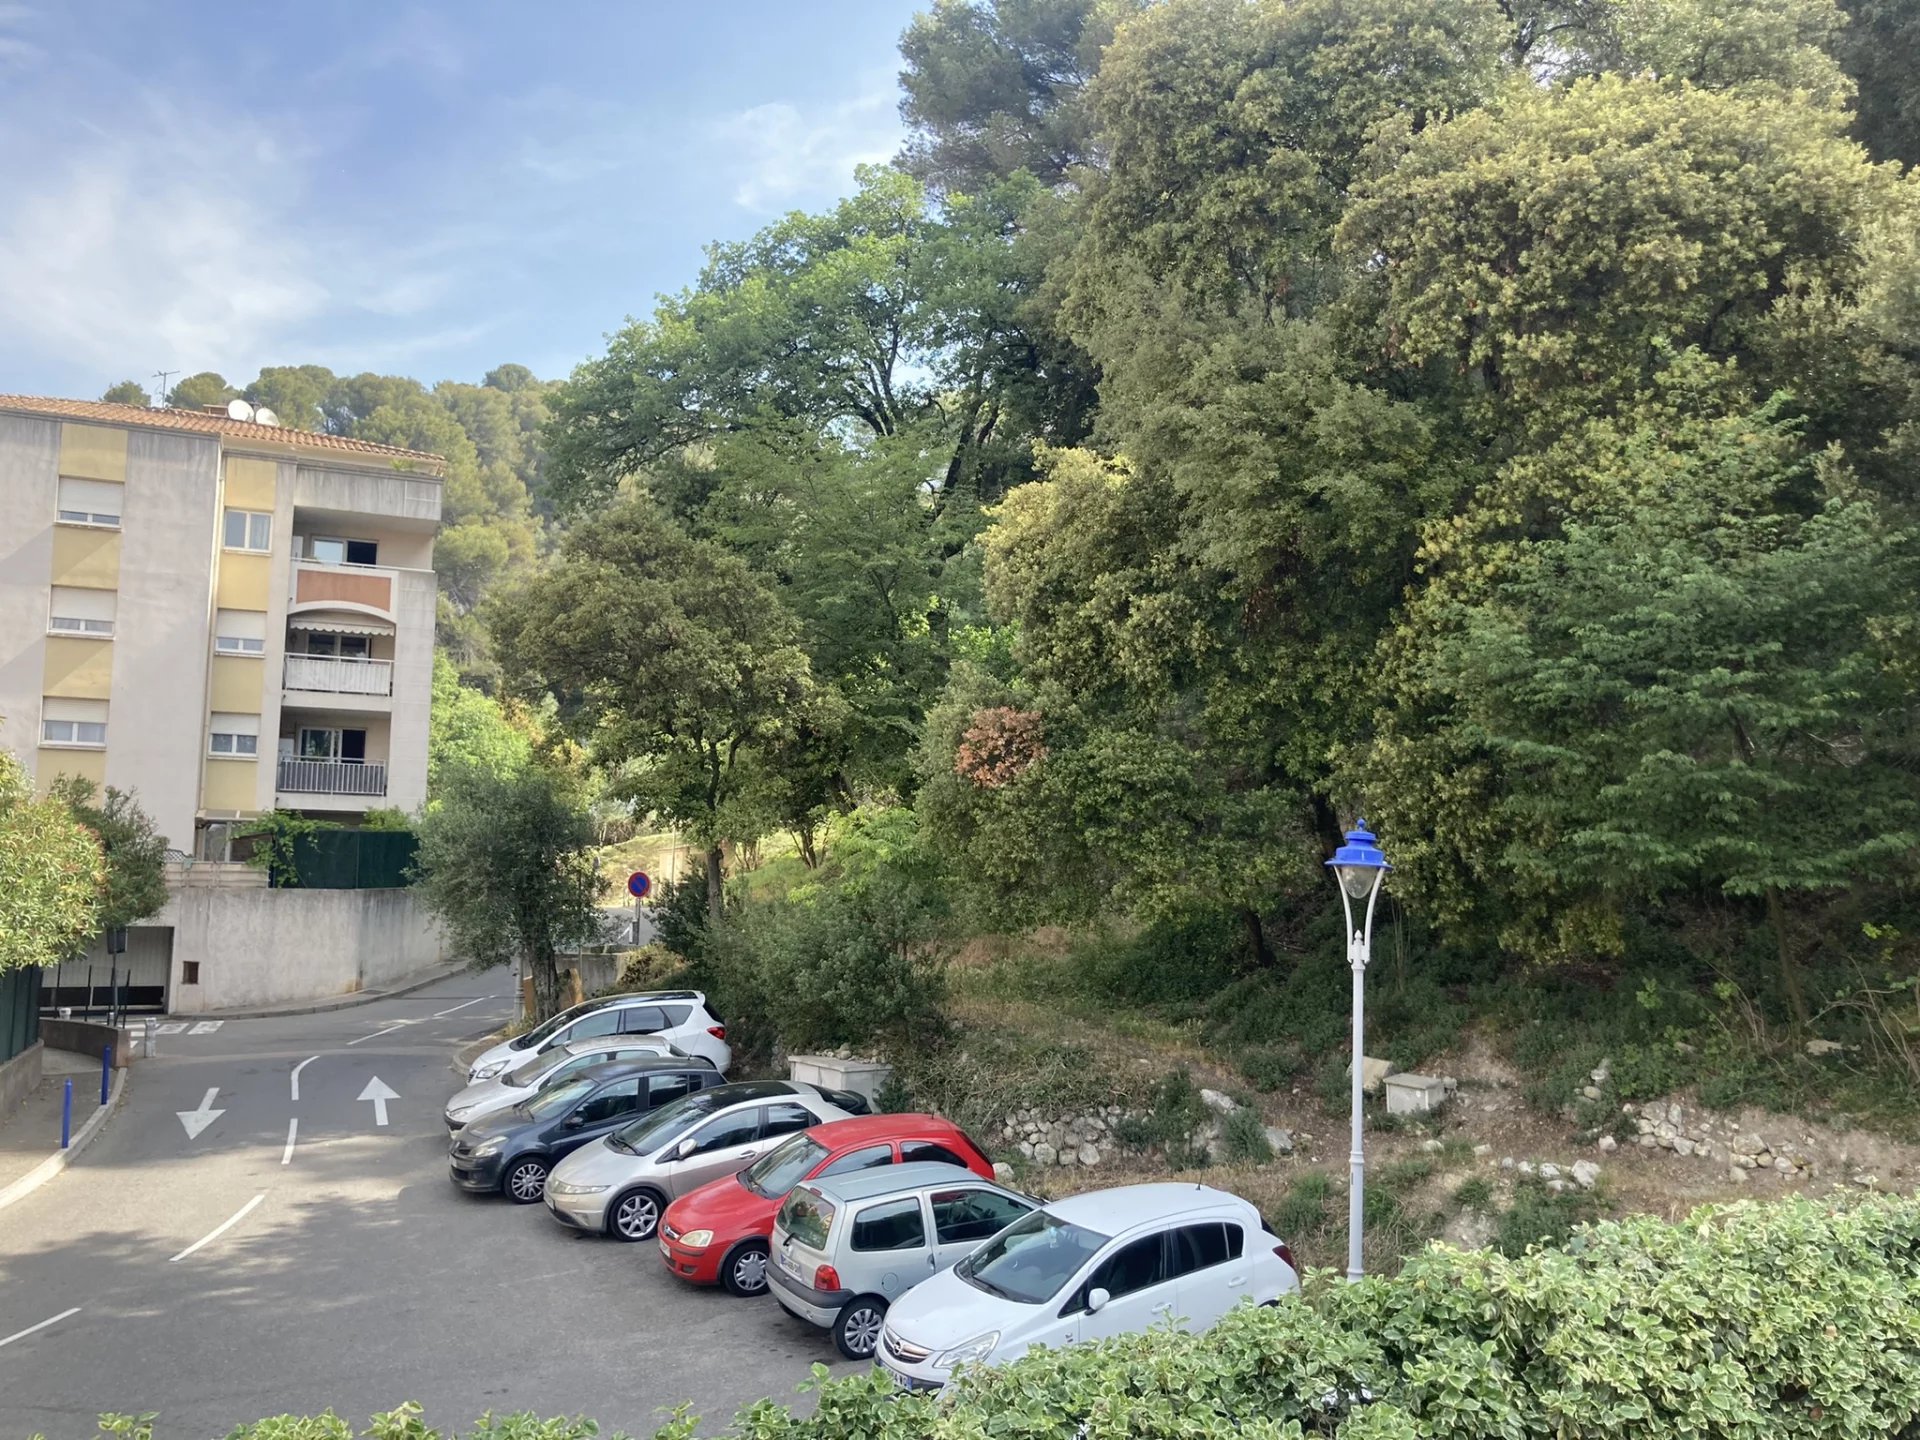 Location Saint André de la Roche 4 pièces 80.45m² avec parking  en centre ville